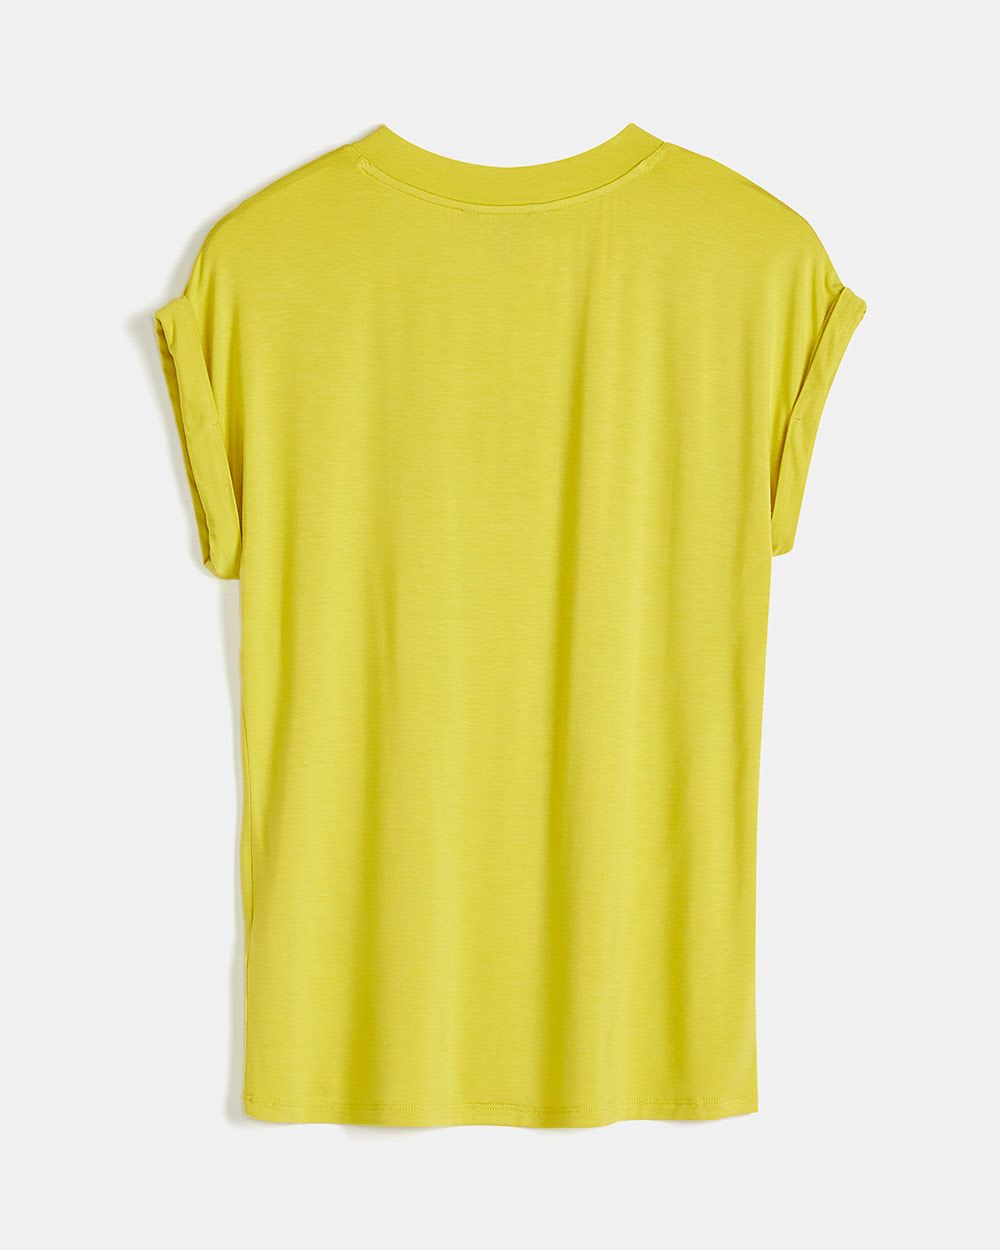 Basic Solid V-Neck T-Shirt